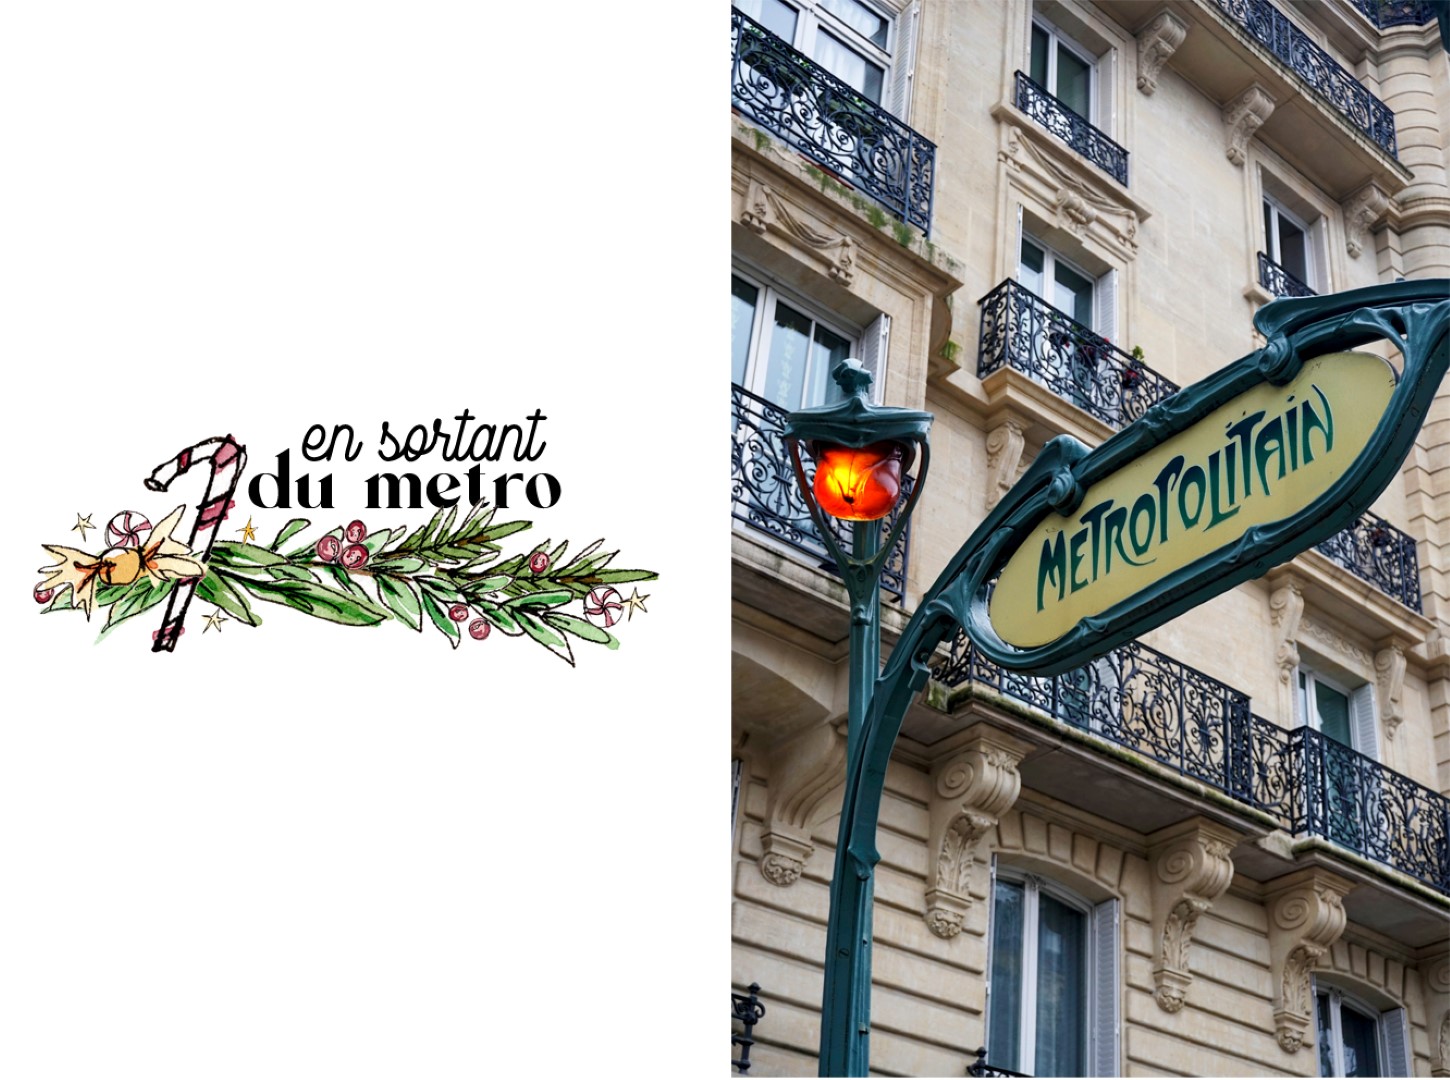 Balade dans les 6e et 7e arrondissements, en attendant Noël - Station de métro Guimard